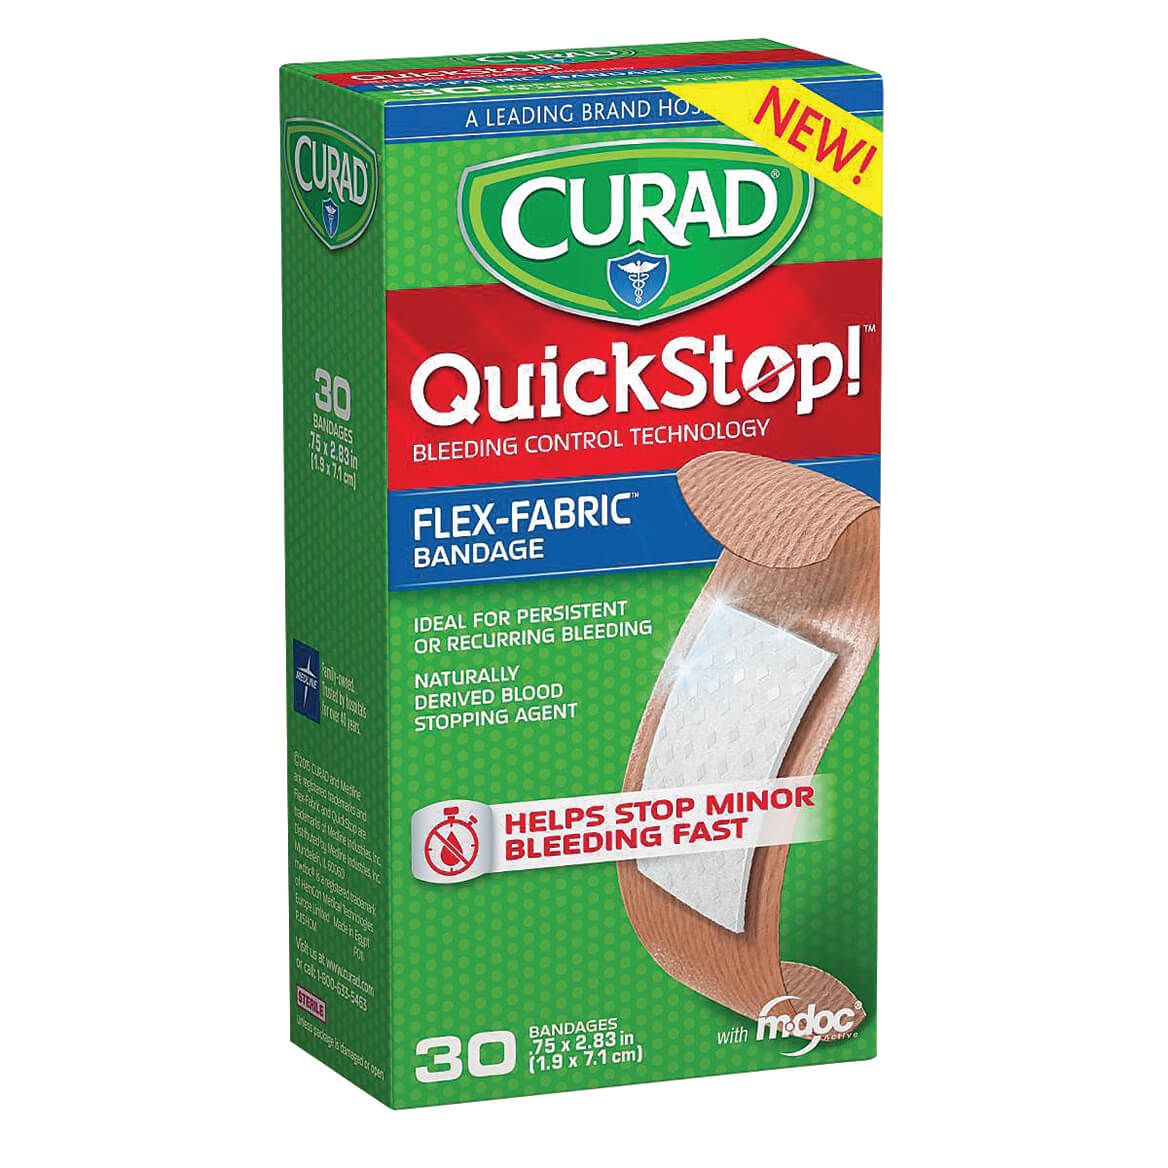 Curad® QuickStop Bandages .75" x 2.83", 30 Count + '-' + 358123